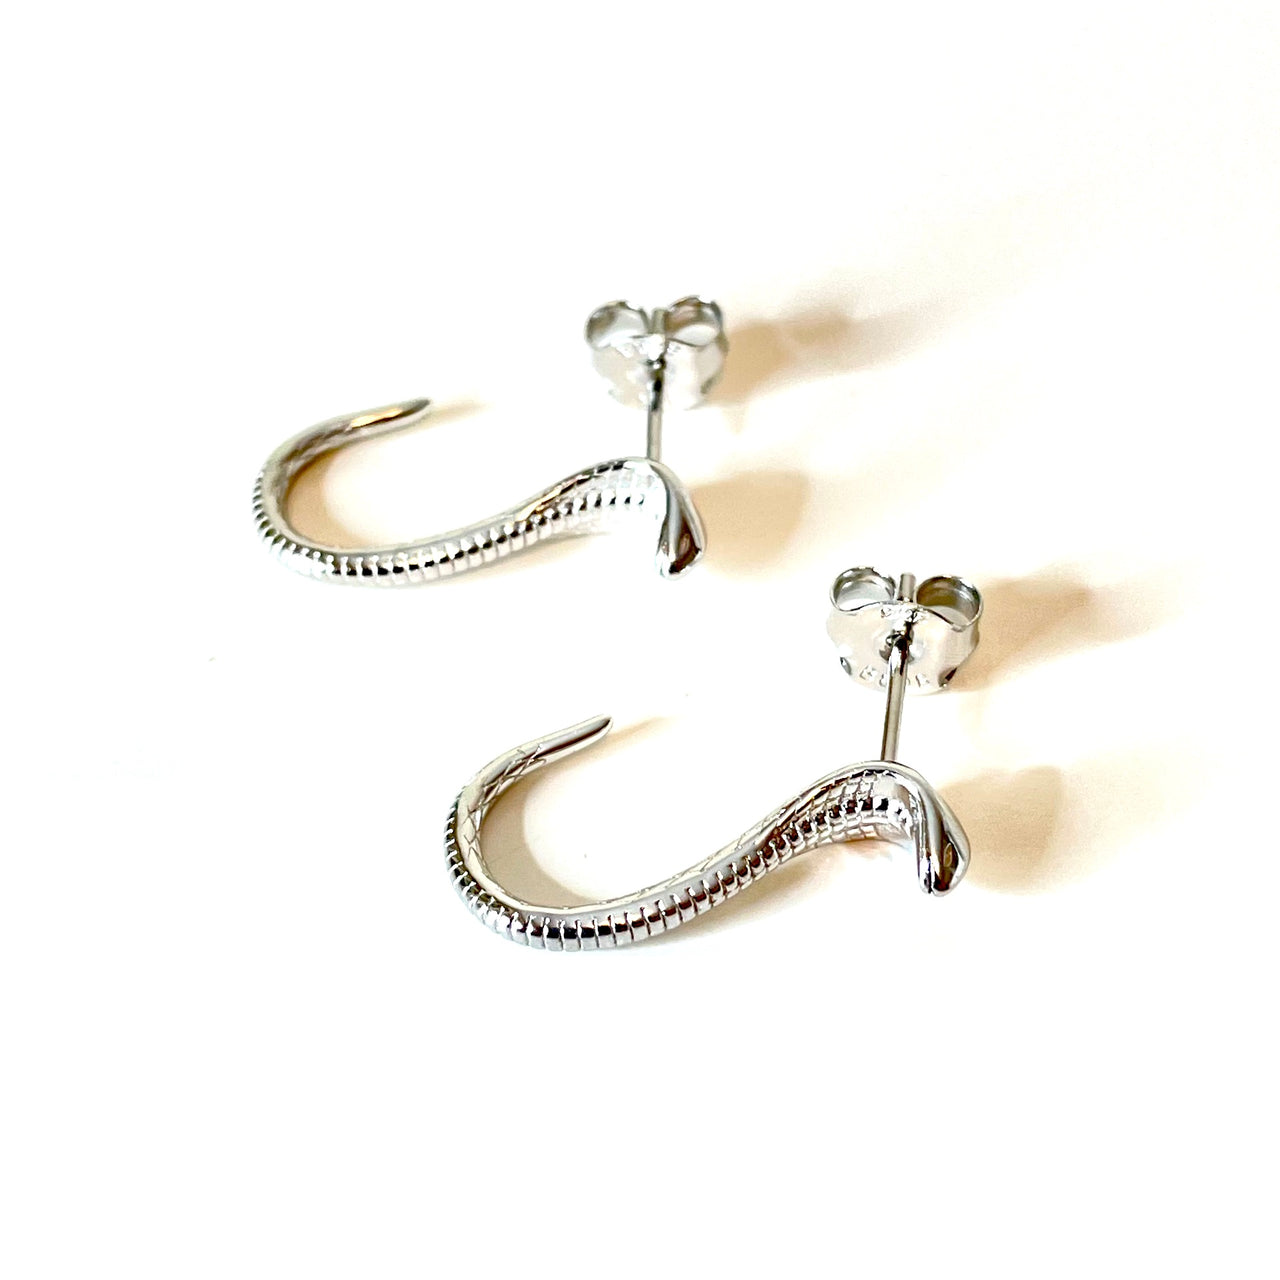 Pendientes con forma de serpiente de plata de ley. Estos pendientes son perfectos para combinar con tu look favorito.